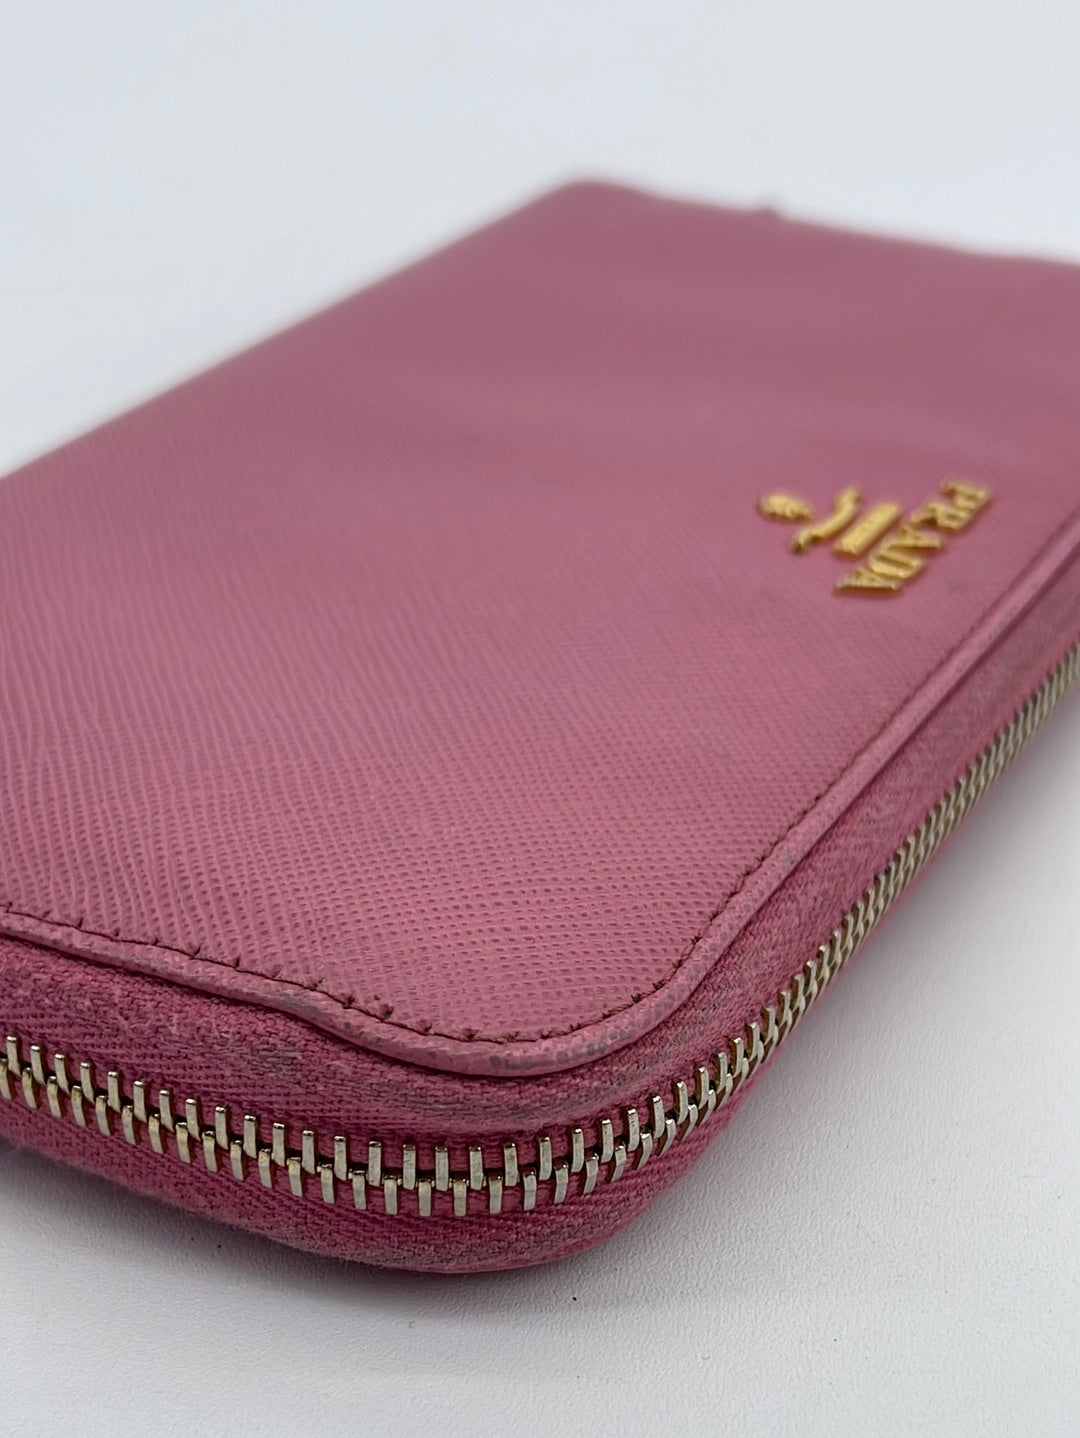 Prada Pink Double Zip Bag, Women's Fashion, Bags & Wallets, Cross